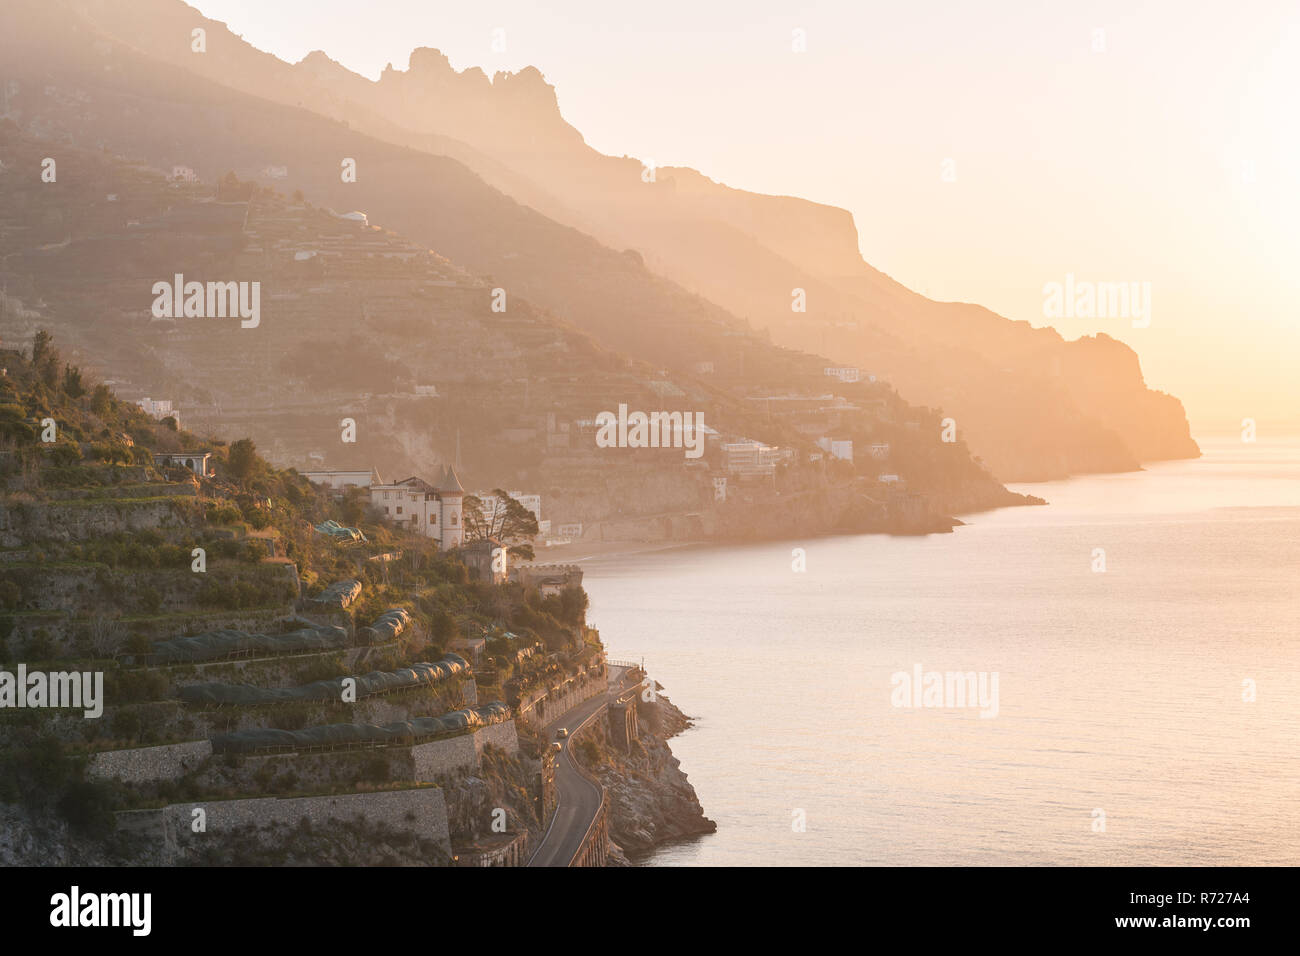 La Costiera Amalfitana a sunrise, visto da minori, in Campania, Italia Foto Stock